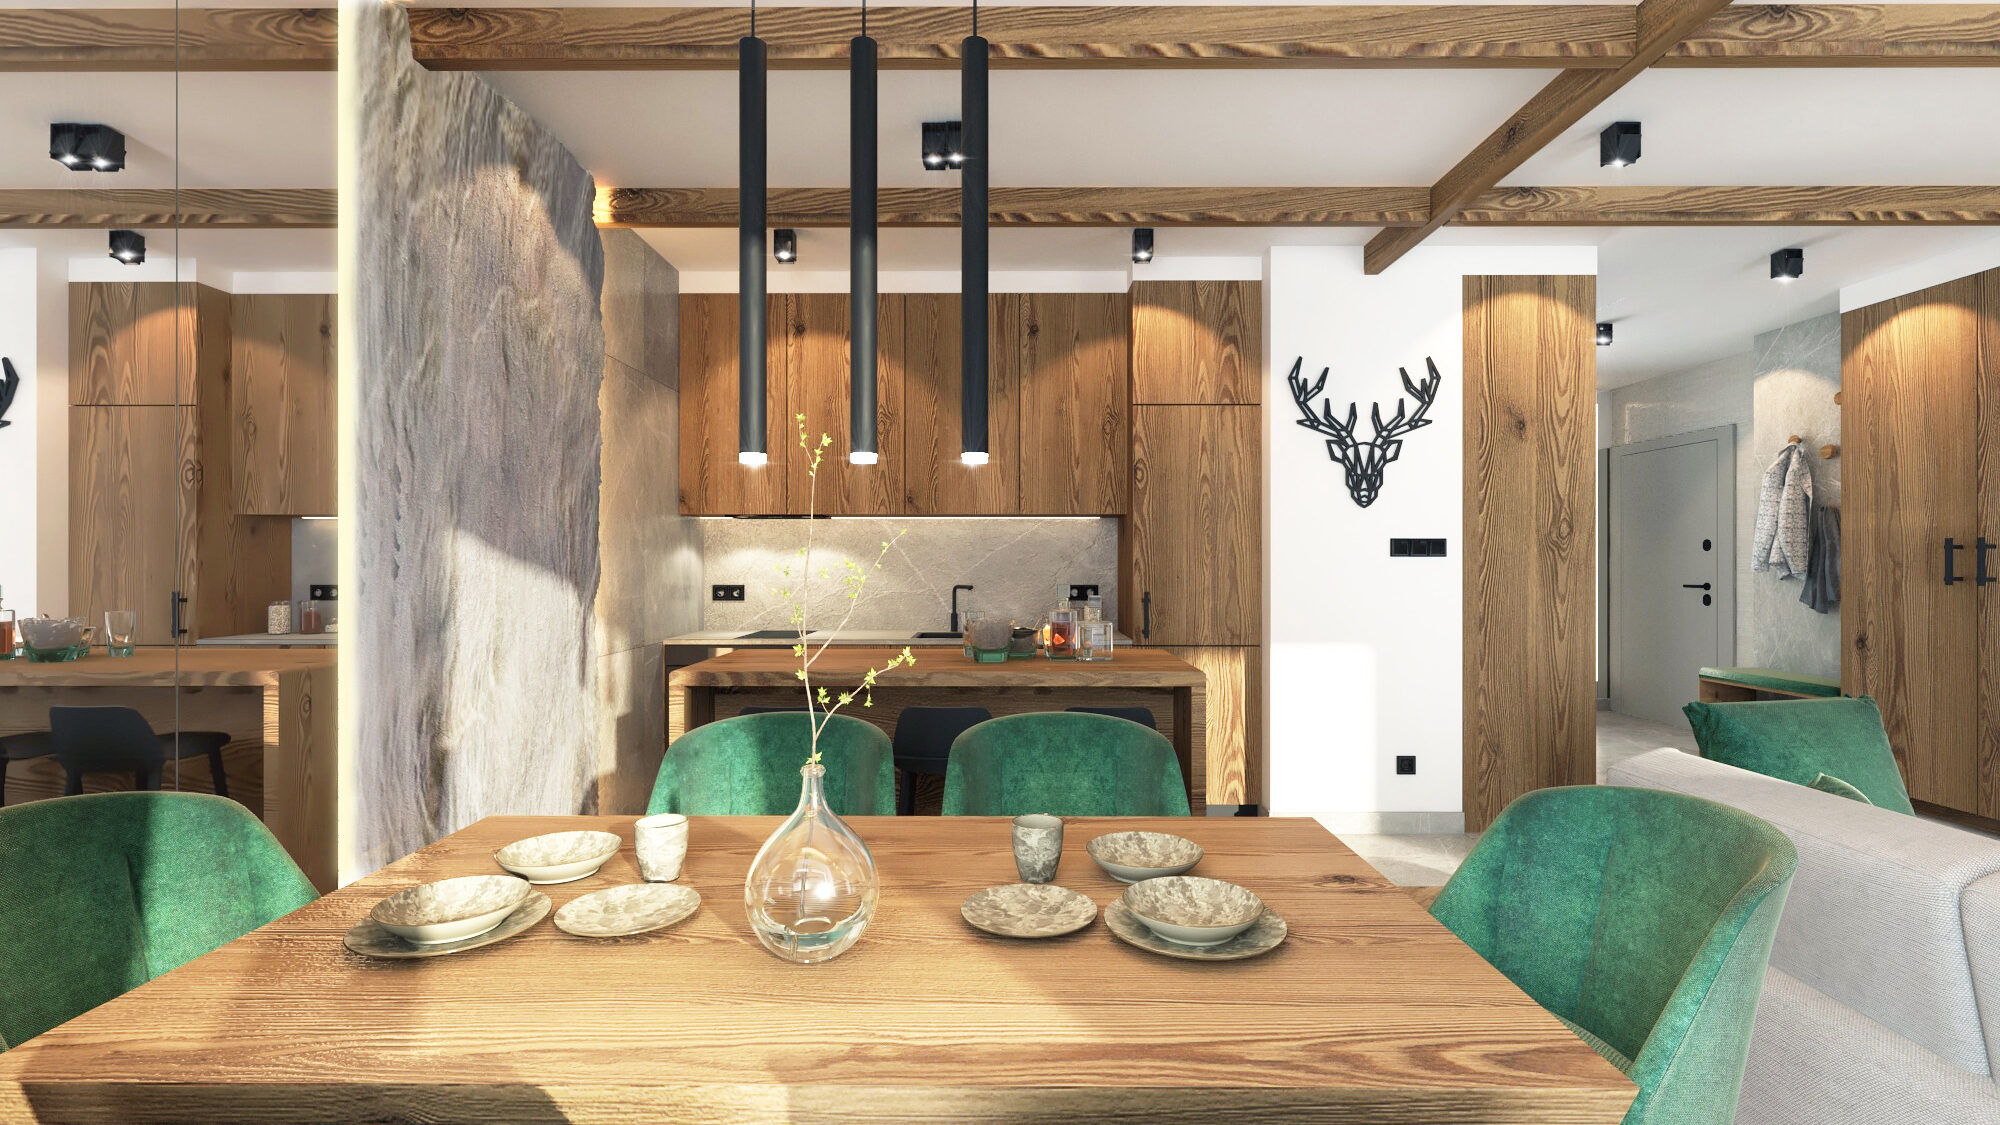 Biuro projektowania wnętrz pokazuje salon z rogami jelenia w tle wykonany w mieście Wrocław